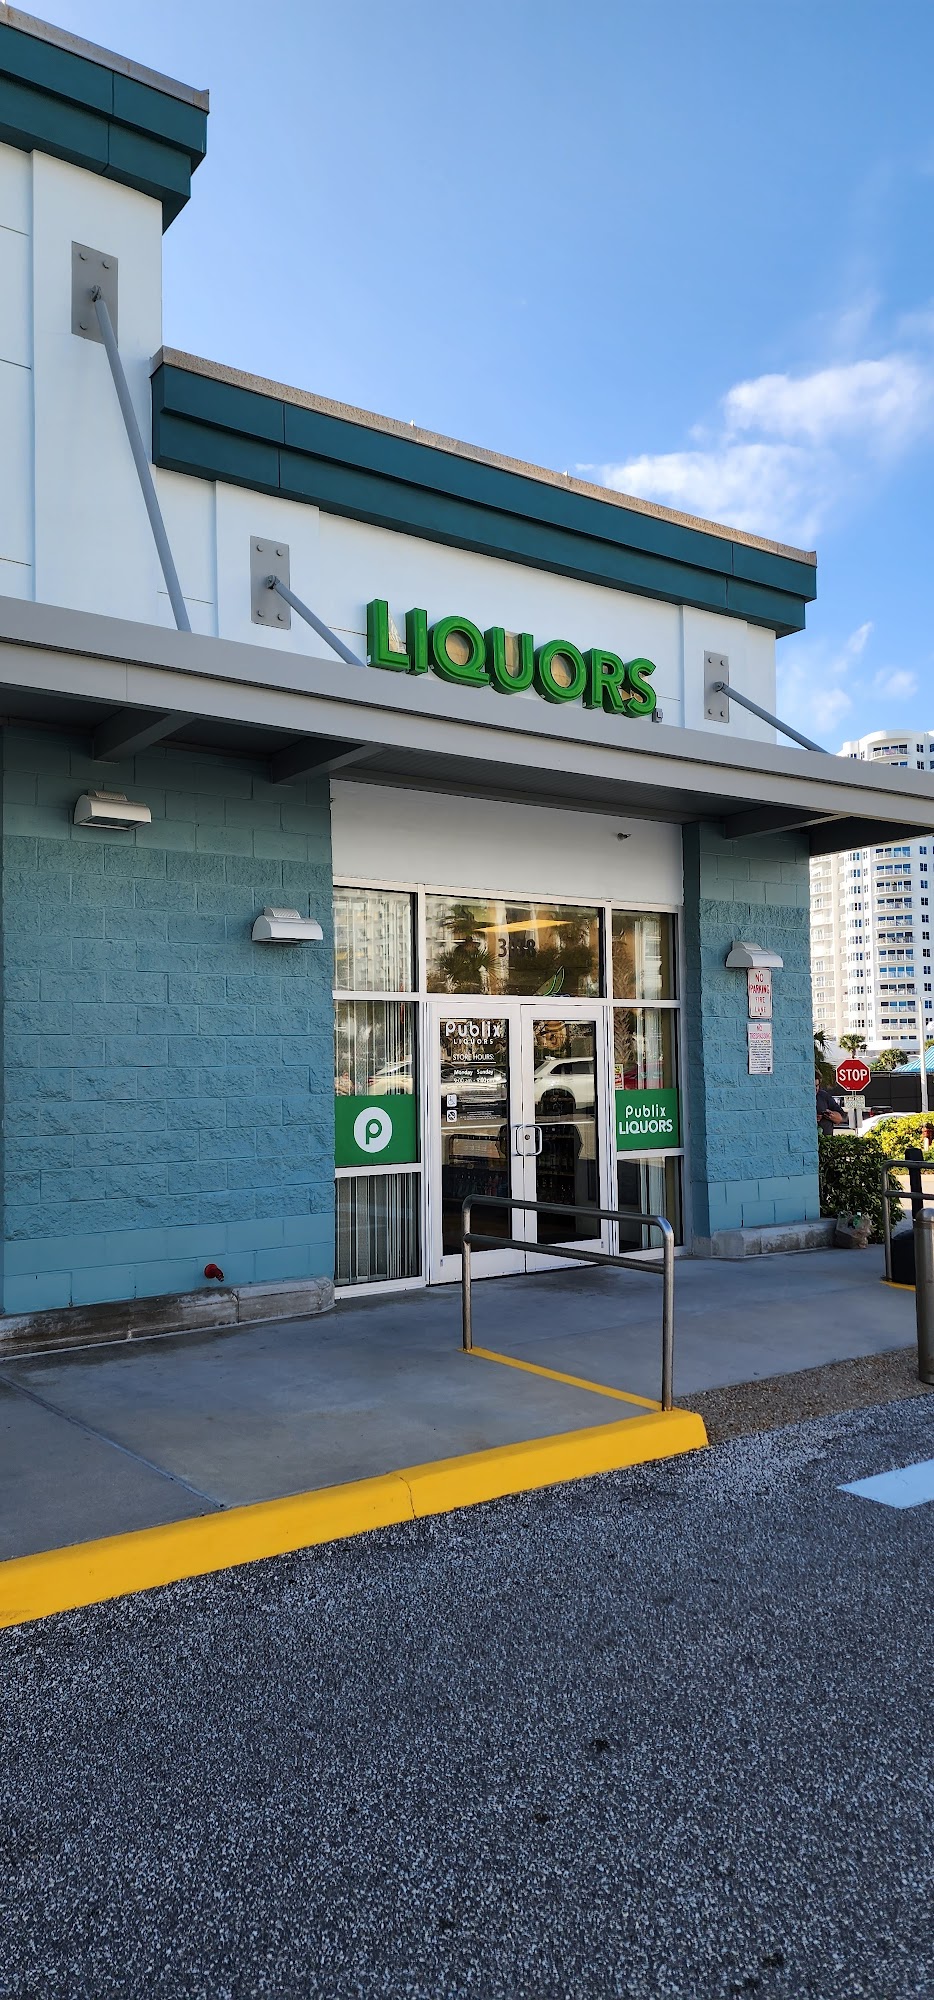 Publix Liquors at Daytona Beach Shores